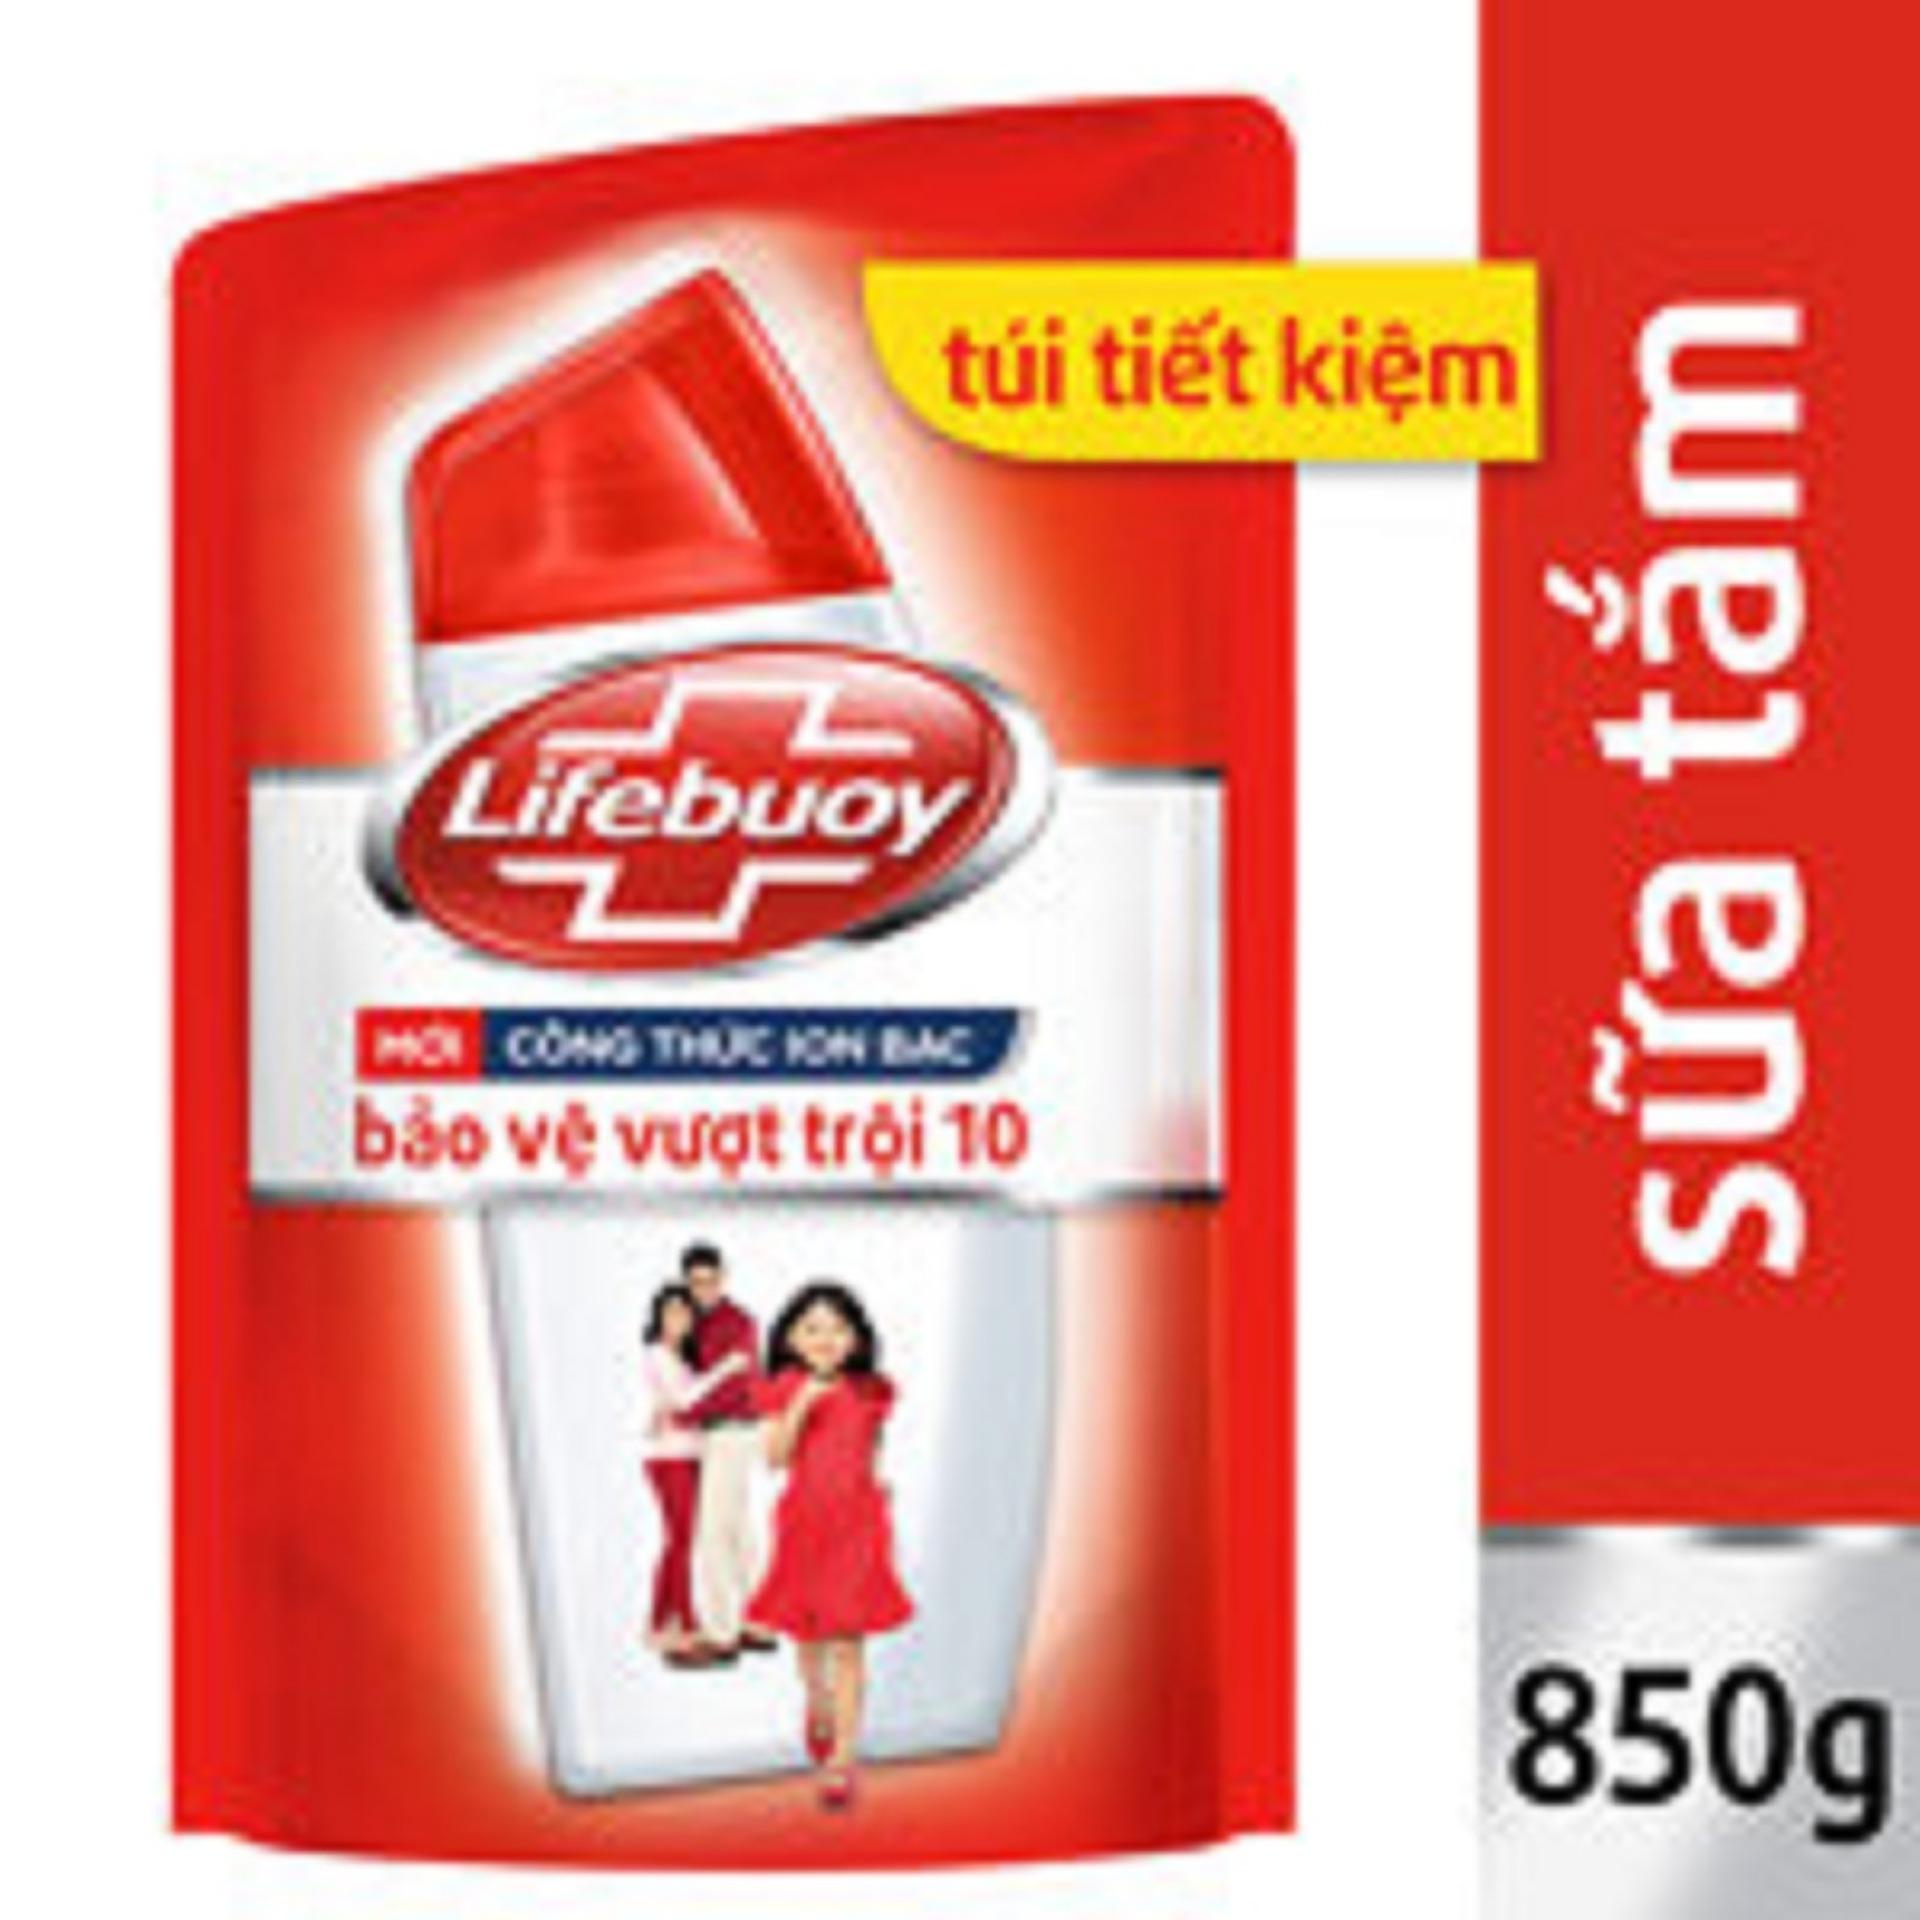 Sữa tắm Lifebuoy bảo vệ vượt trội 10 túi 850g đỏ